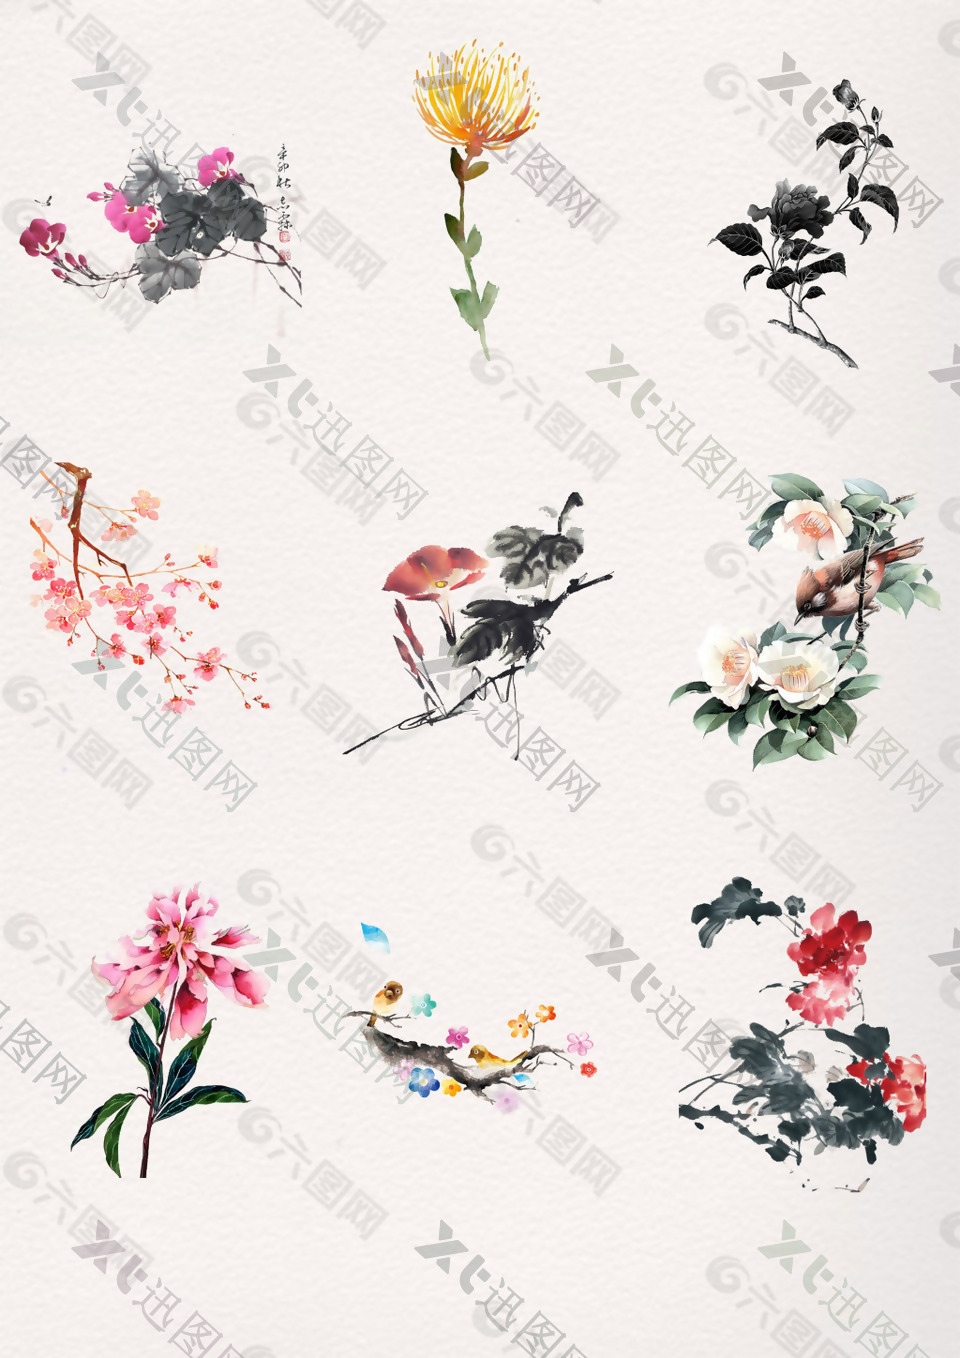 水墨多彩中国风花卉